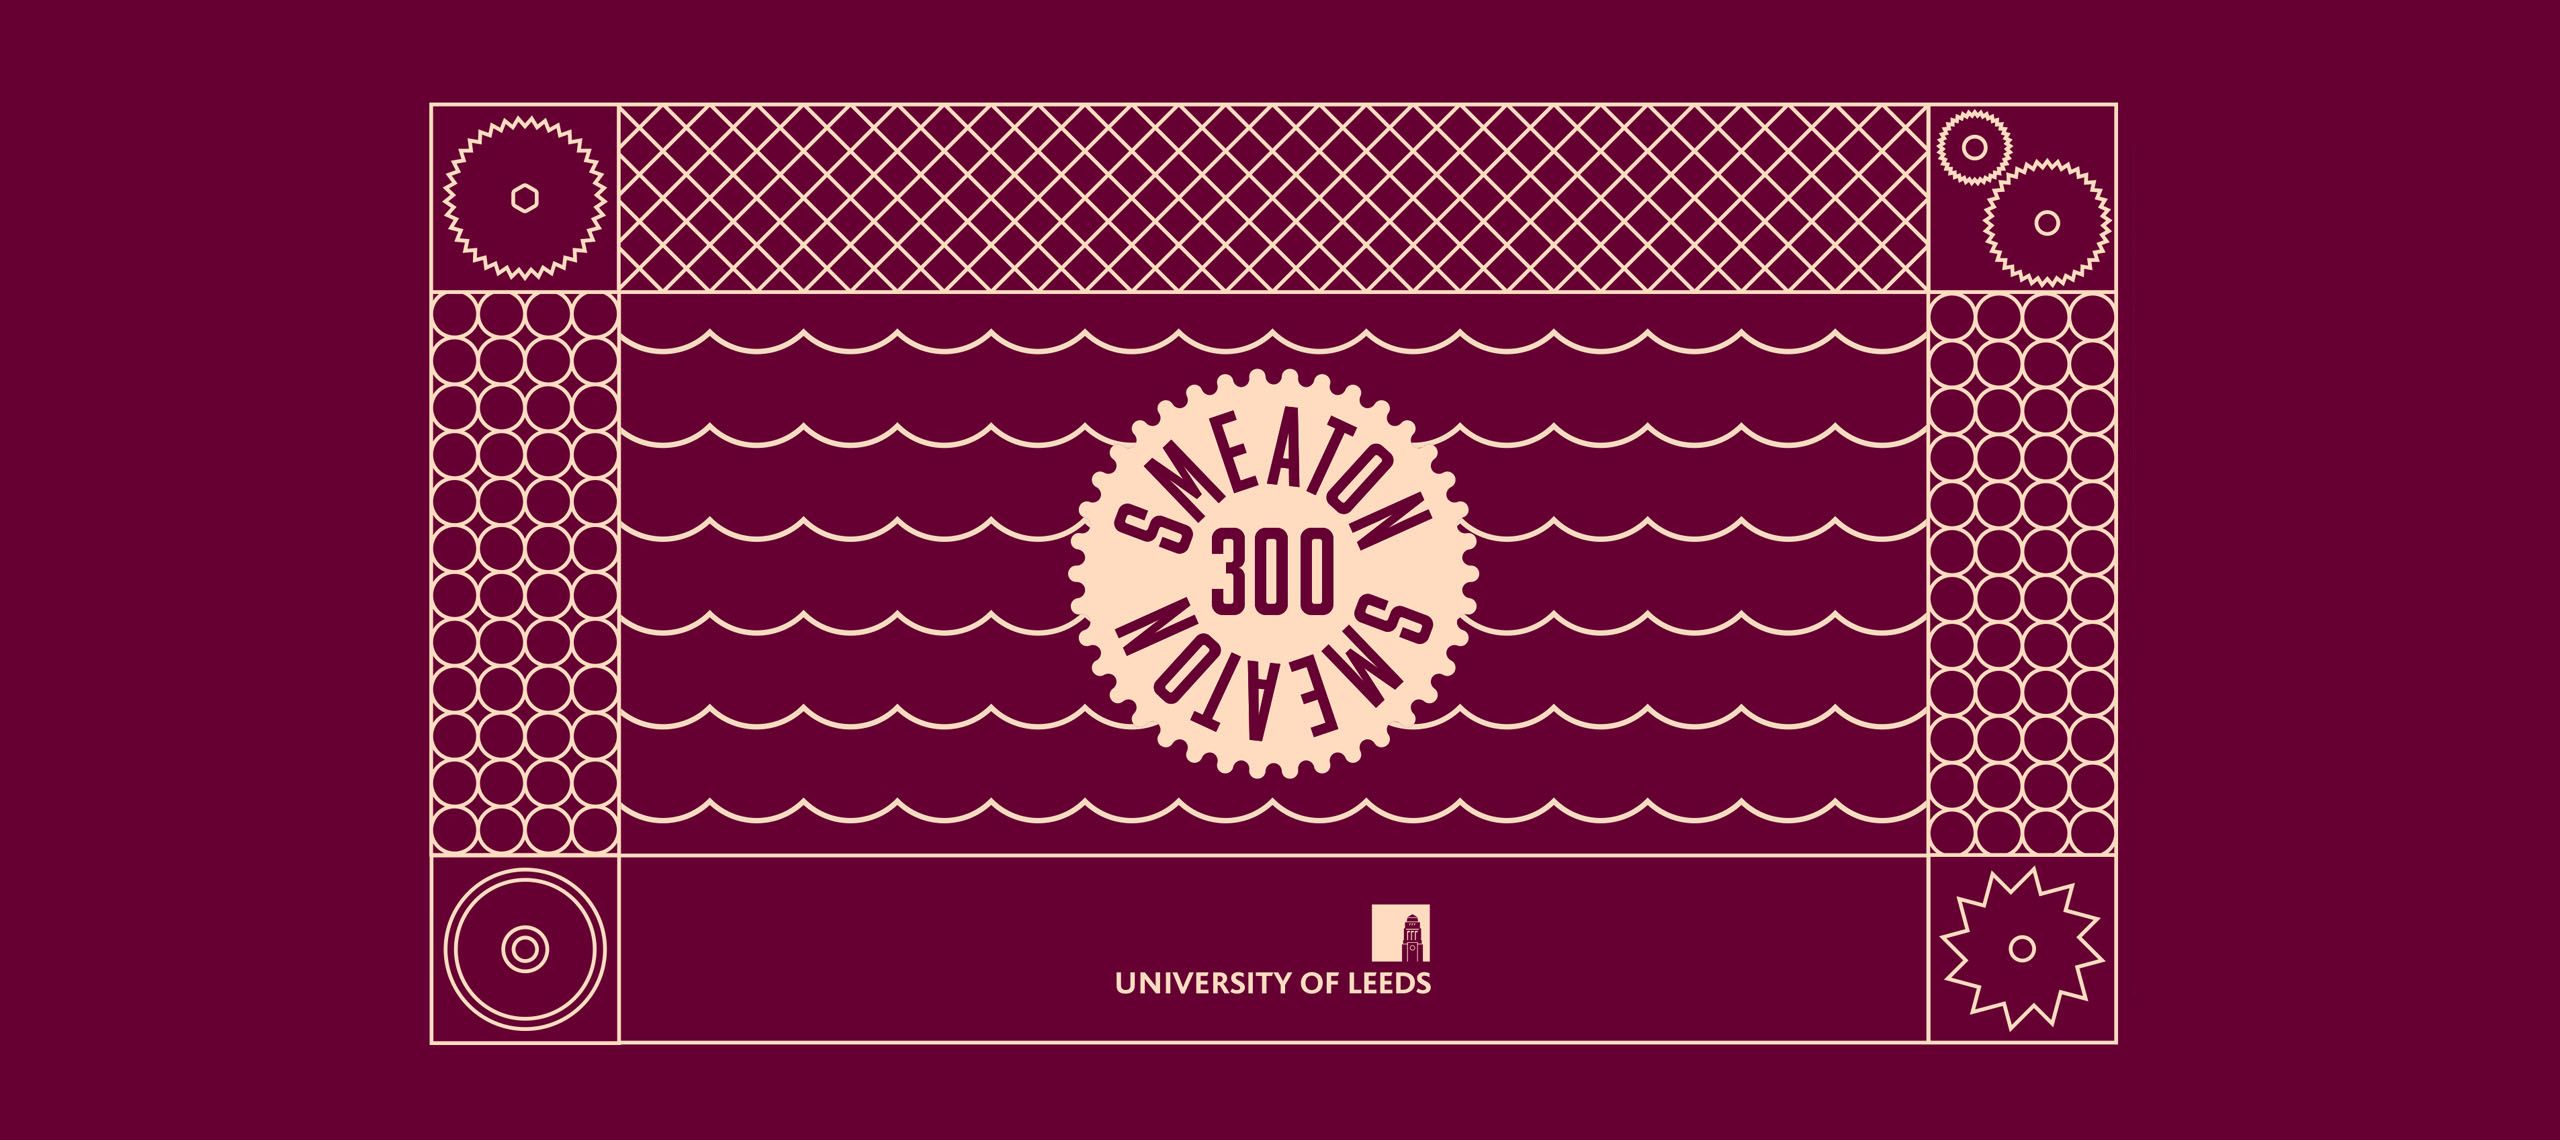 Smeaton 300 logo.